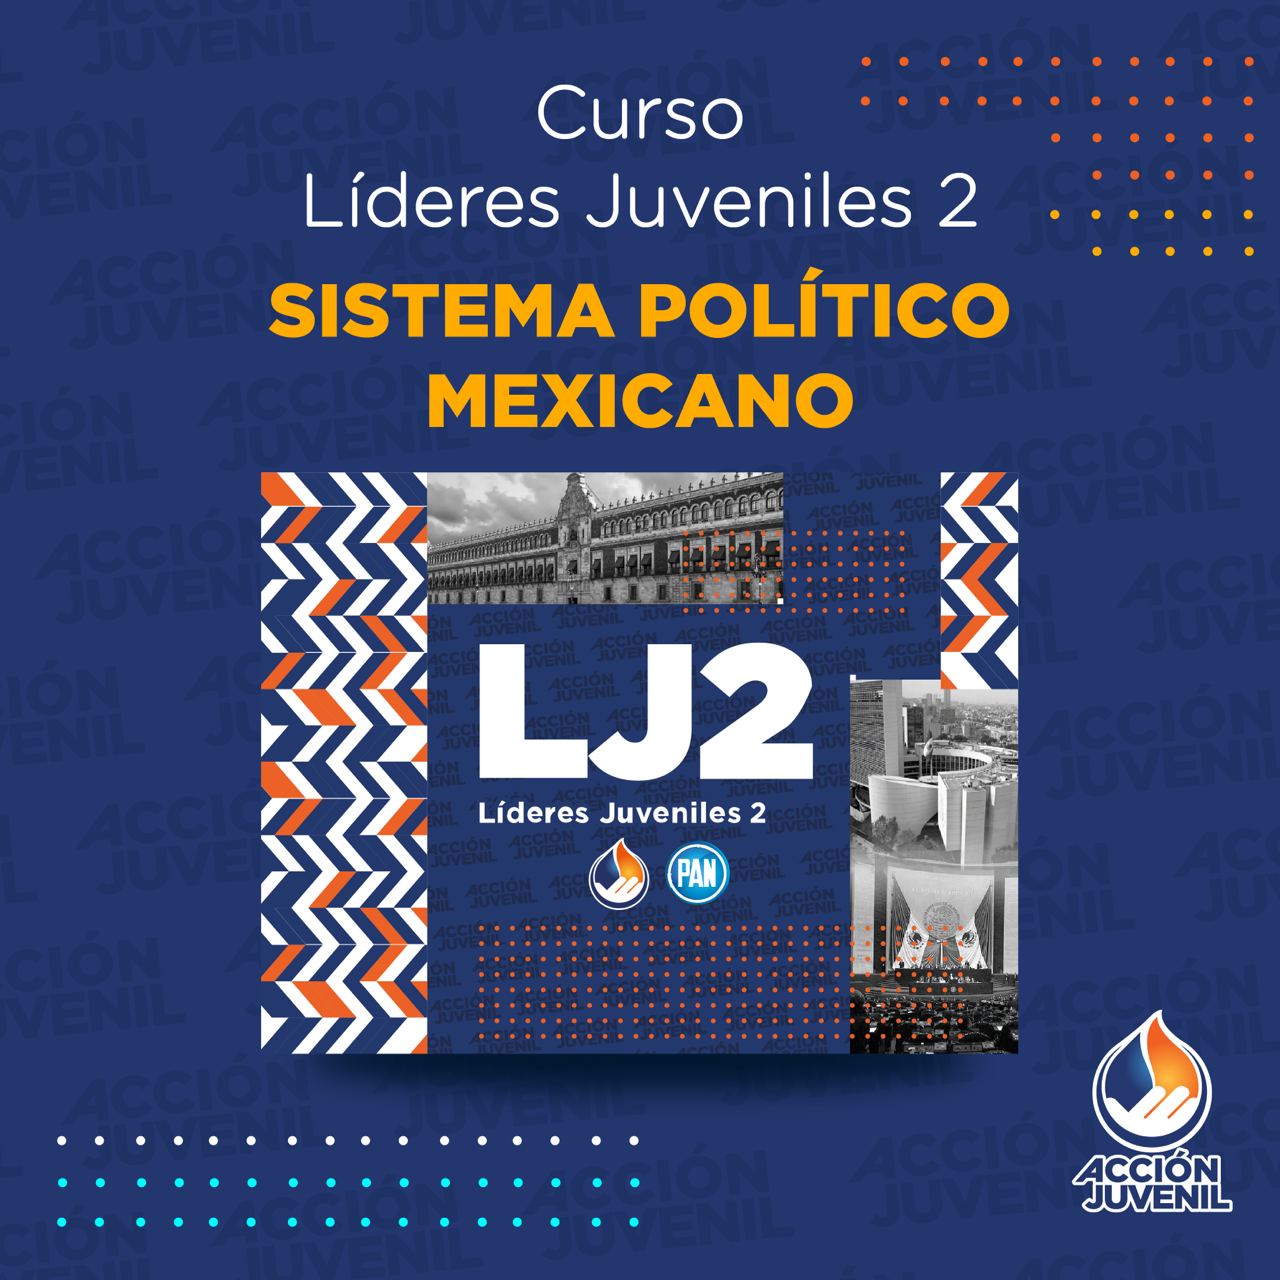 Curso Líderes Juveniles 2 Sistema Político Mexicano Cuernavaca, MOR 03/08/22